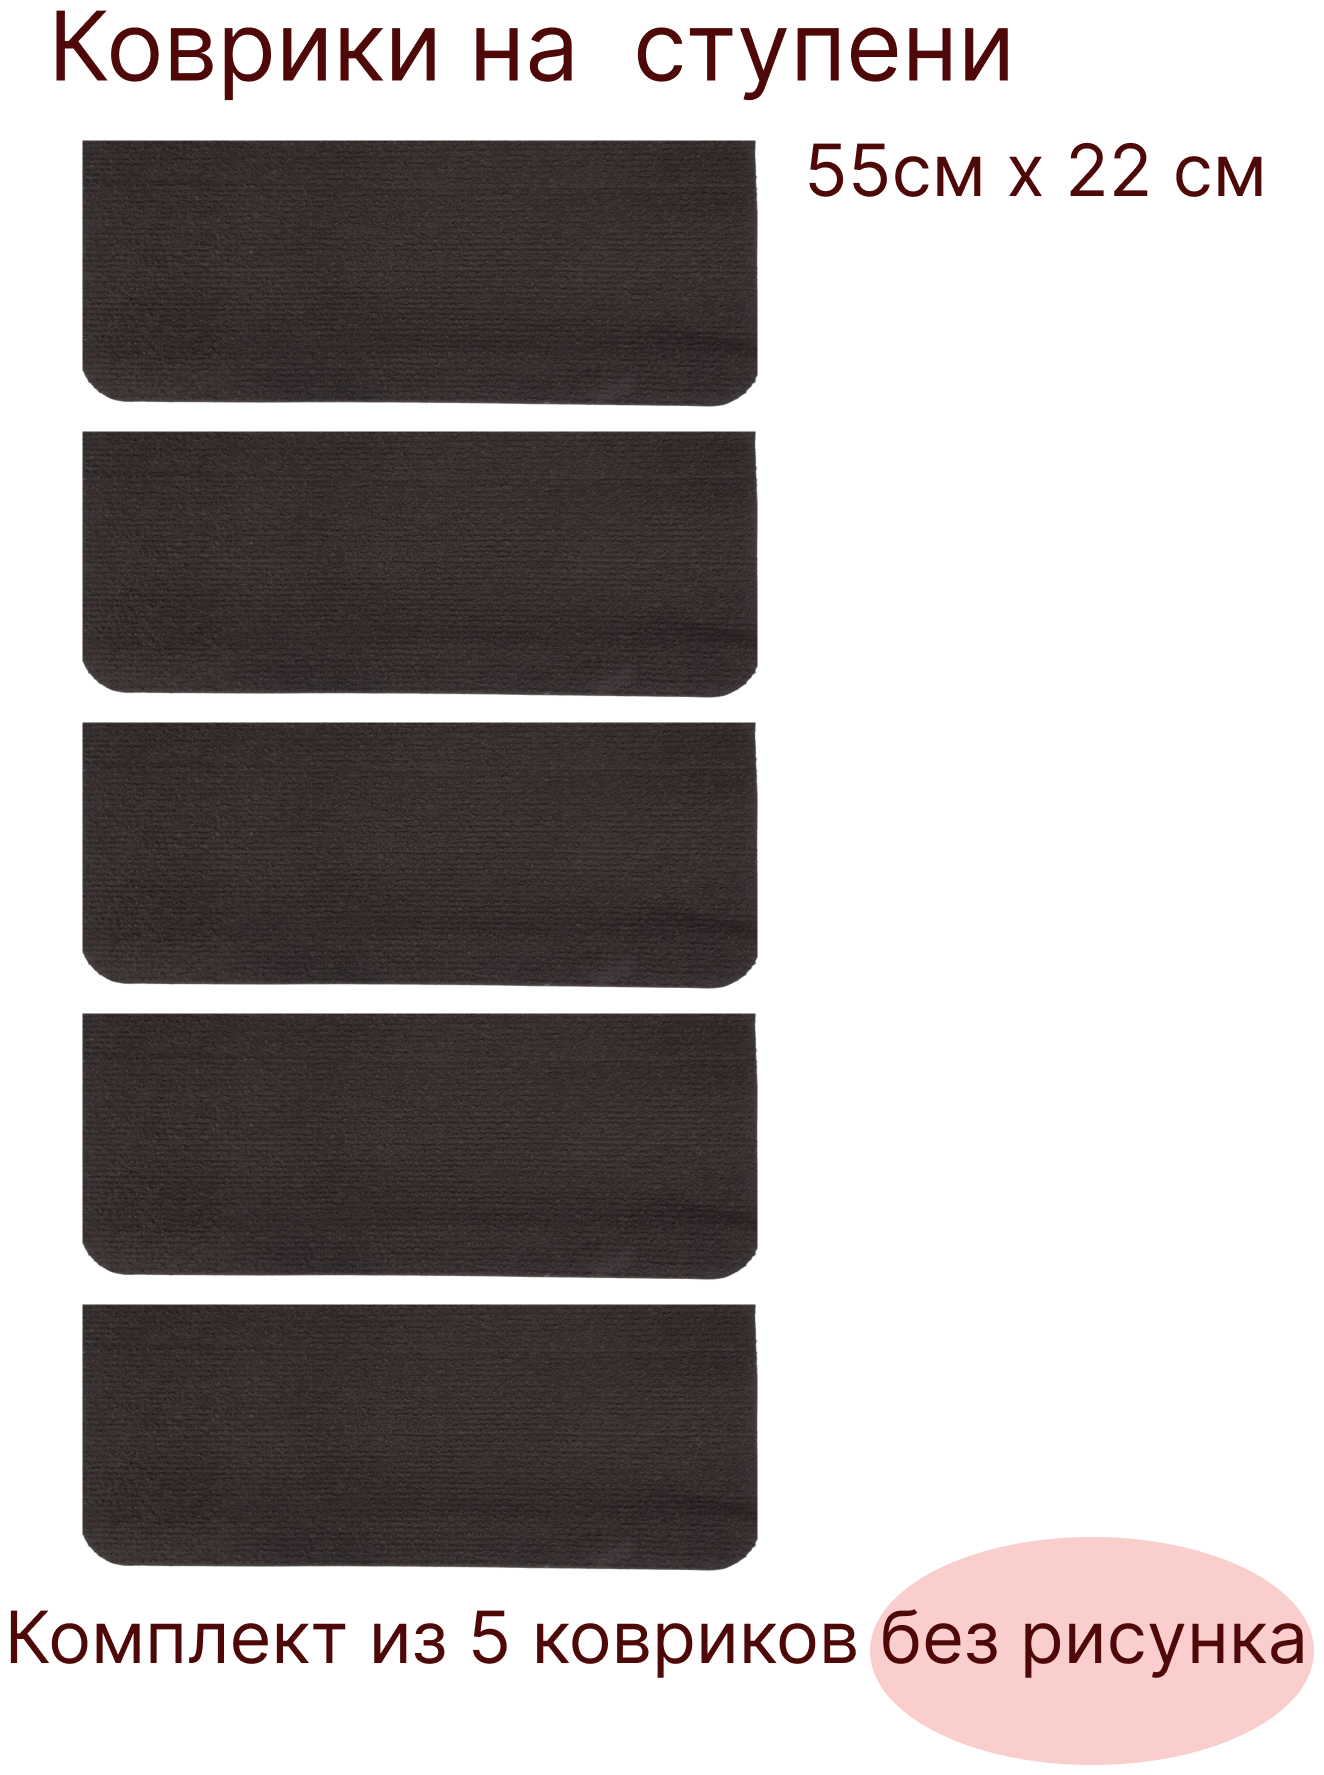 Набор ковриков на ступени для лестницы 5 штук, 55х22 см, шоколадного цвета без рисунка, KF. - фотография № 3